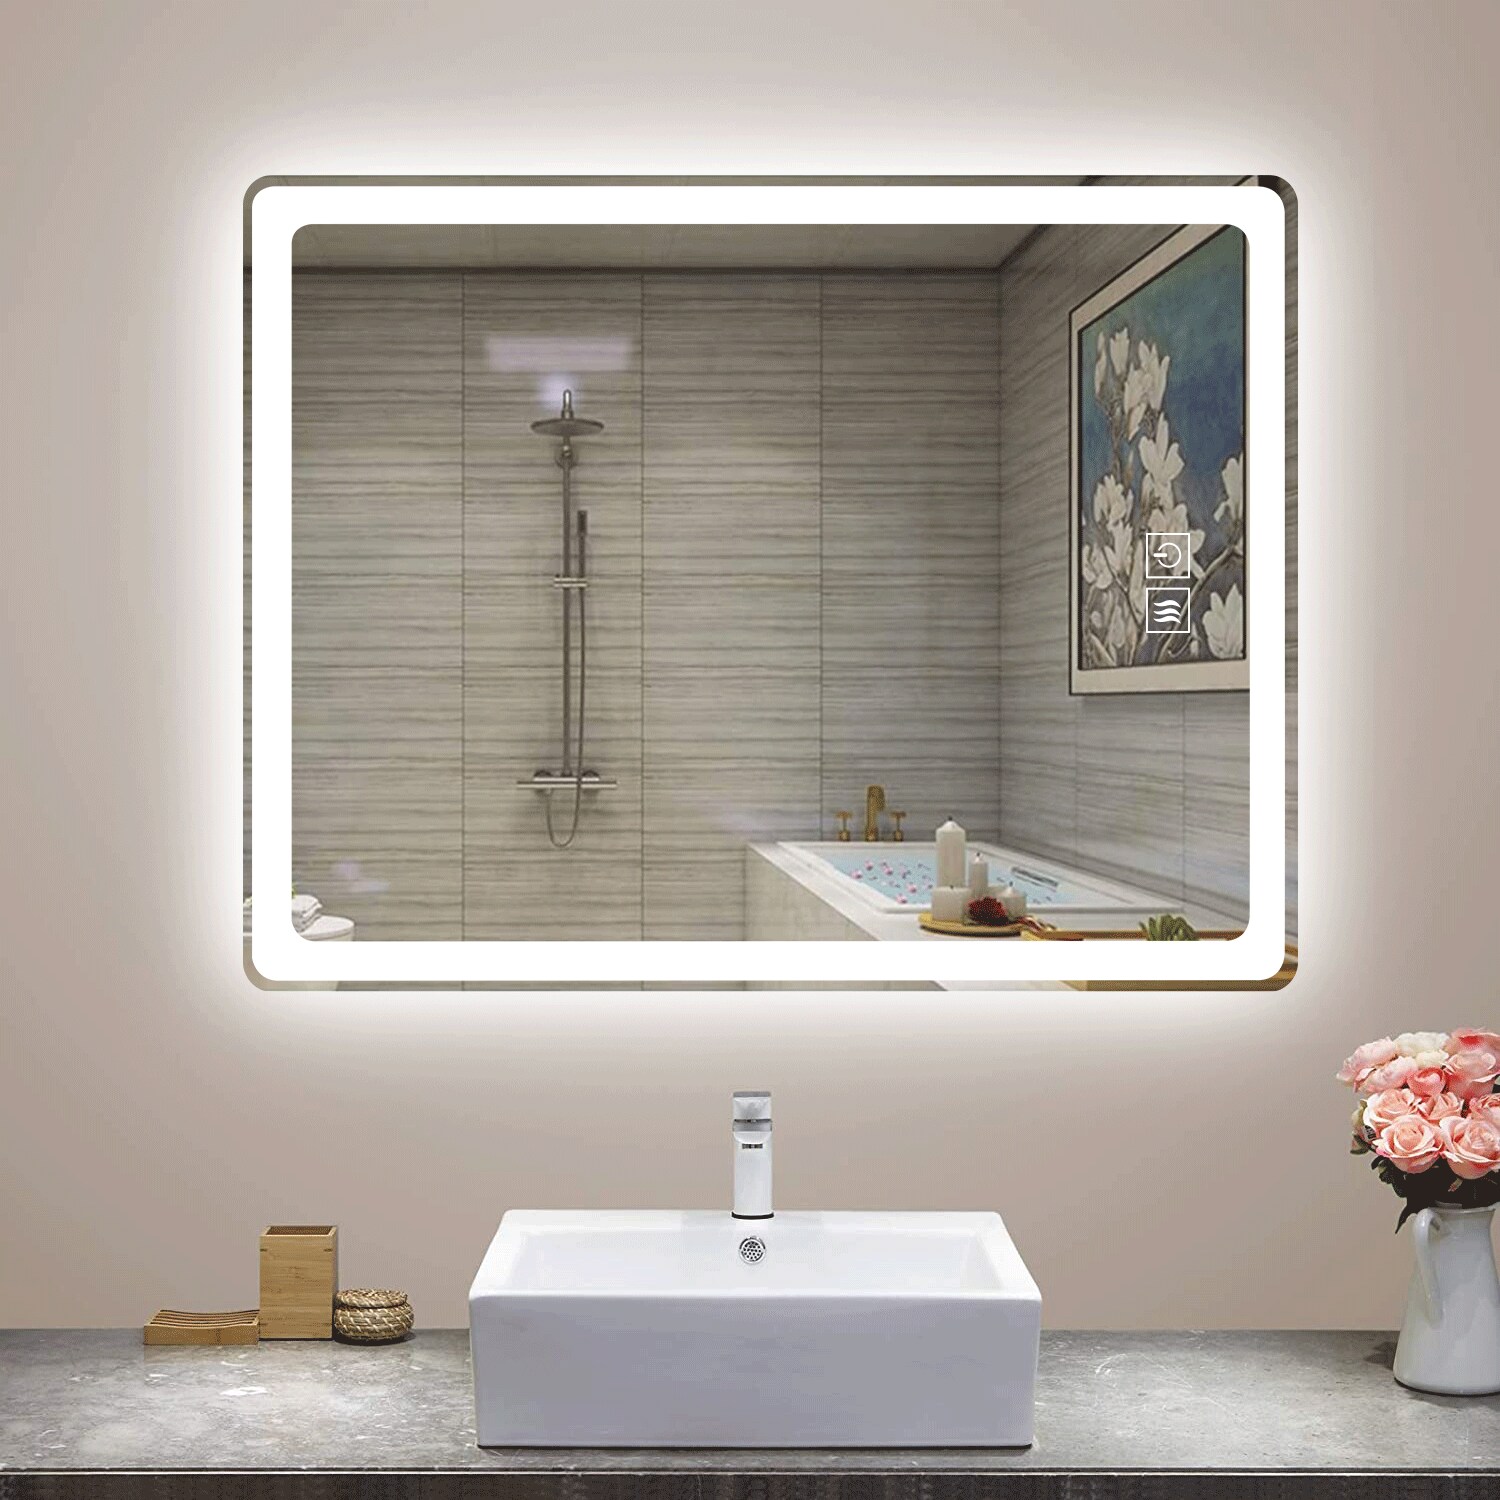 NeuType 32-in x 24-in LED Lighted Frameless Rectangular Fog Free Frameless Bathroom  Vanity Mirror at